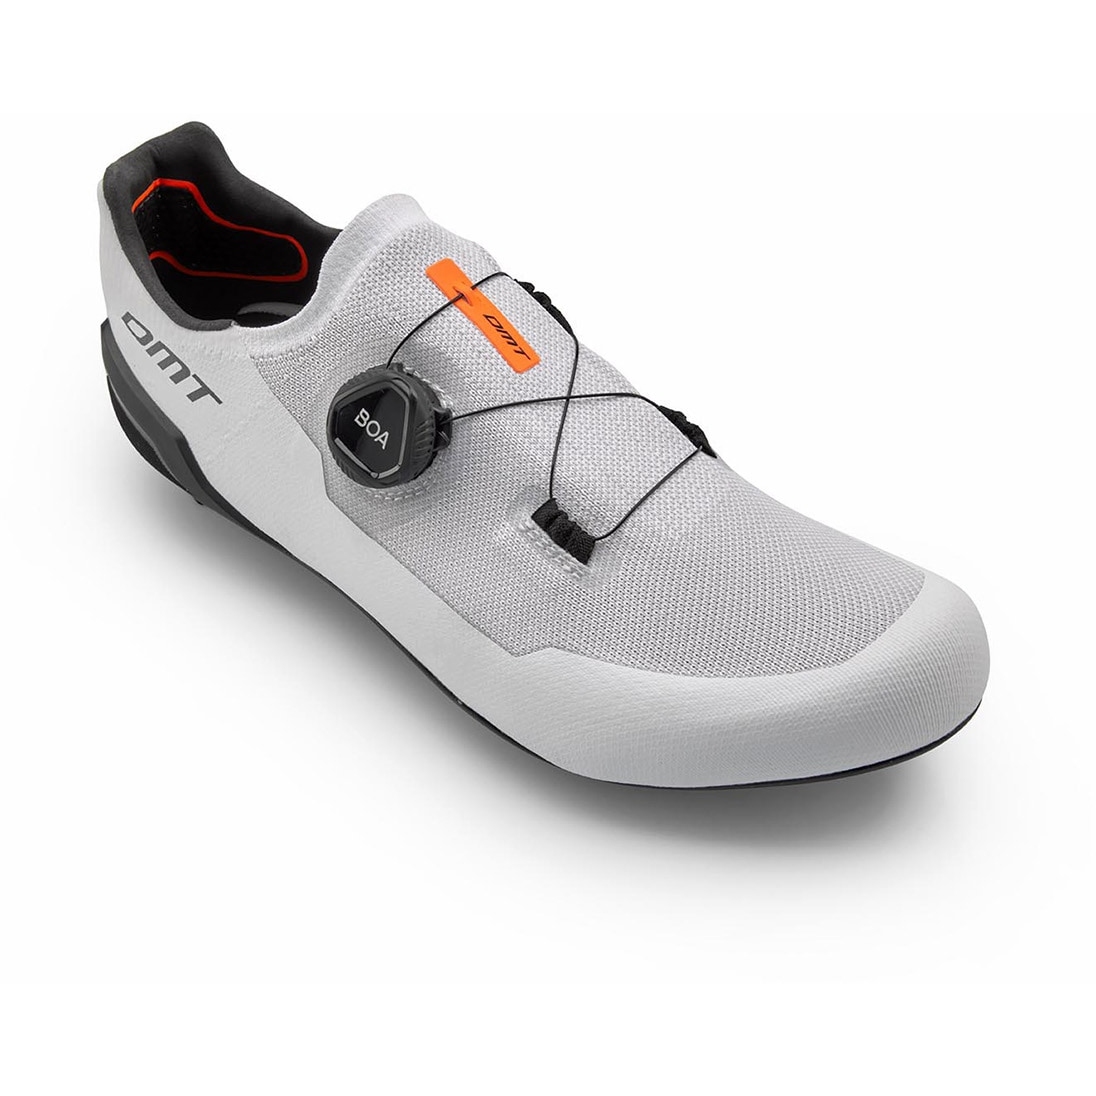 Productfoto van DMT KR30 Racefietsschoenen - wit/zwart